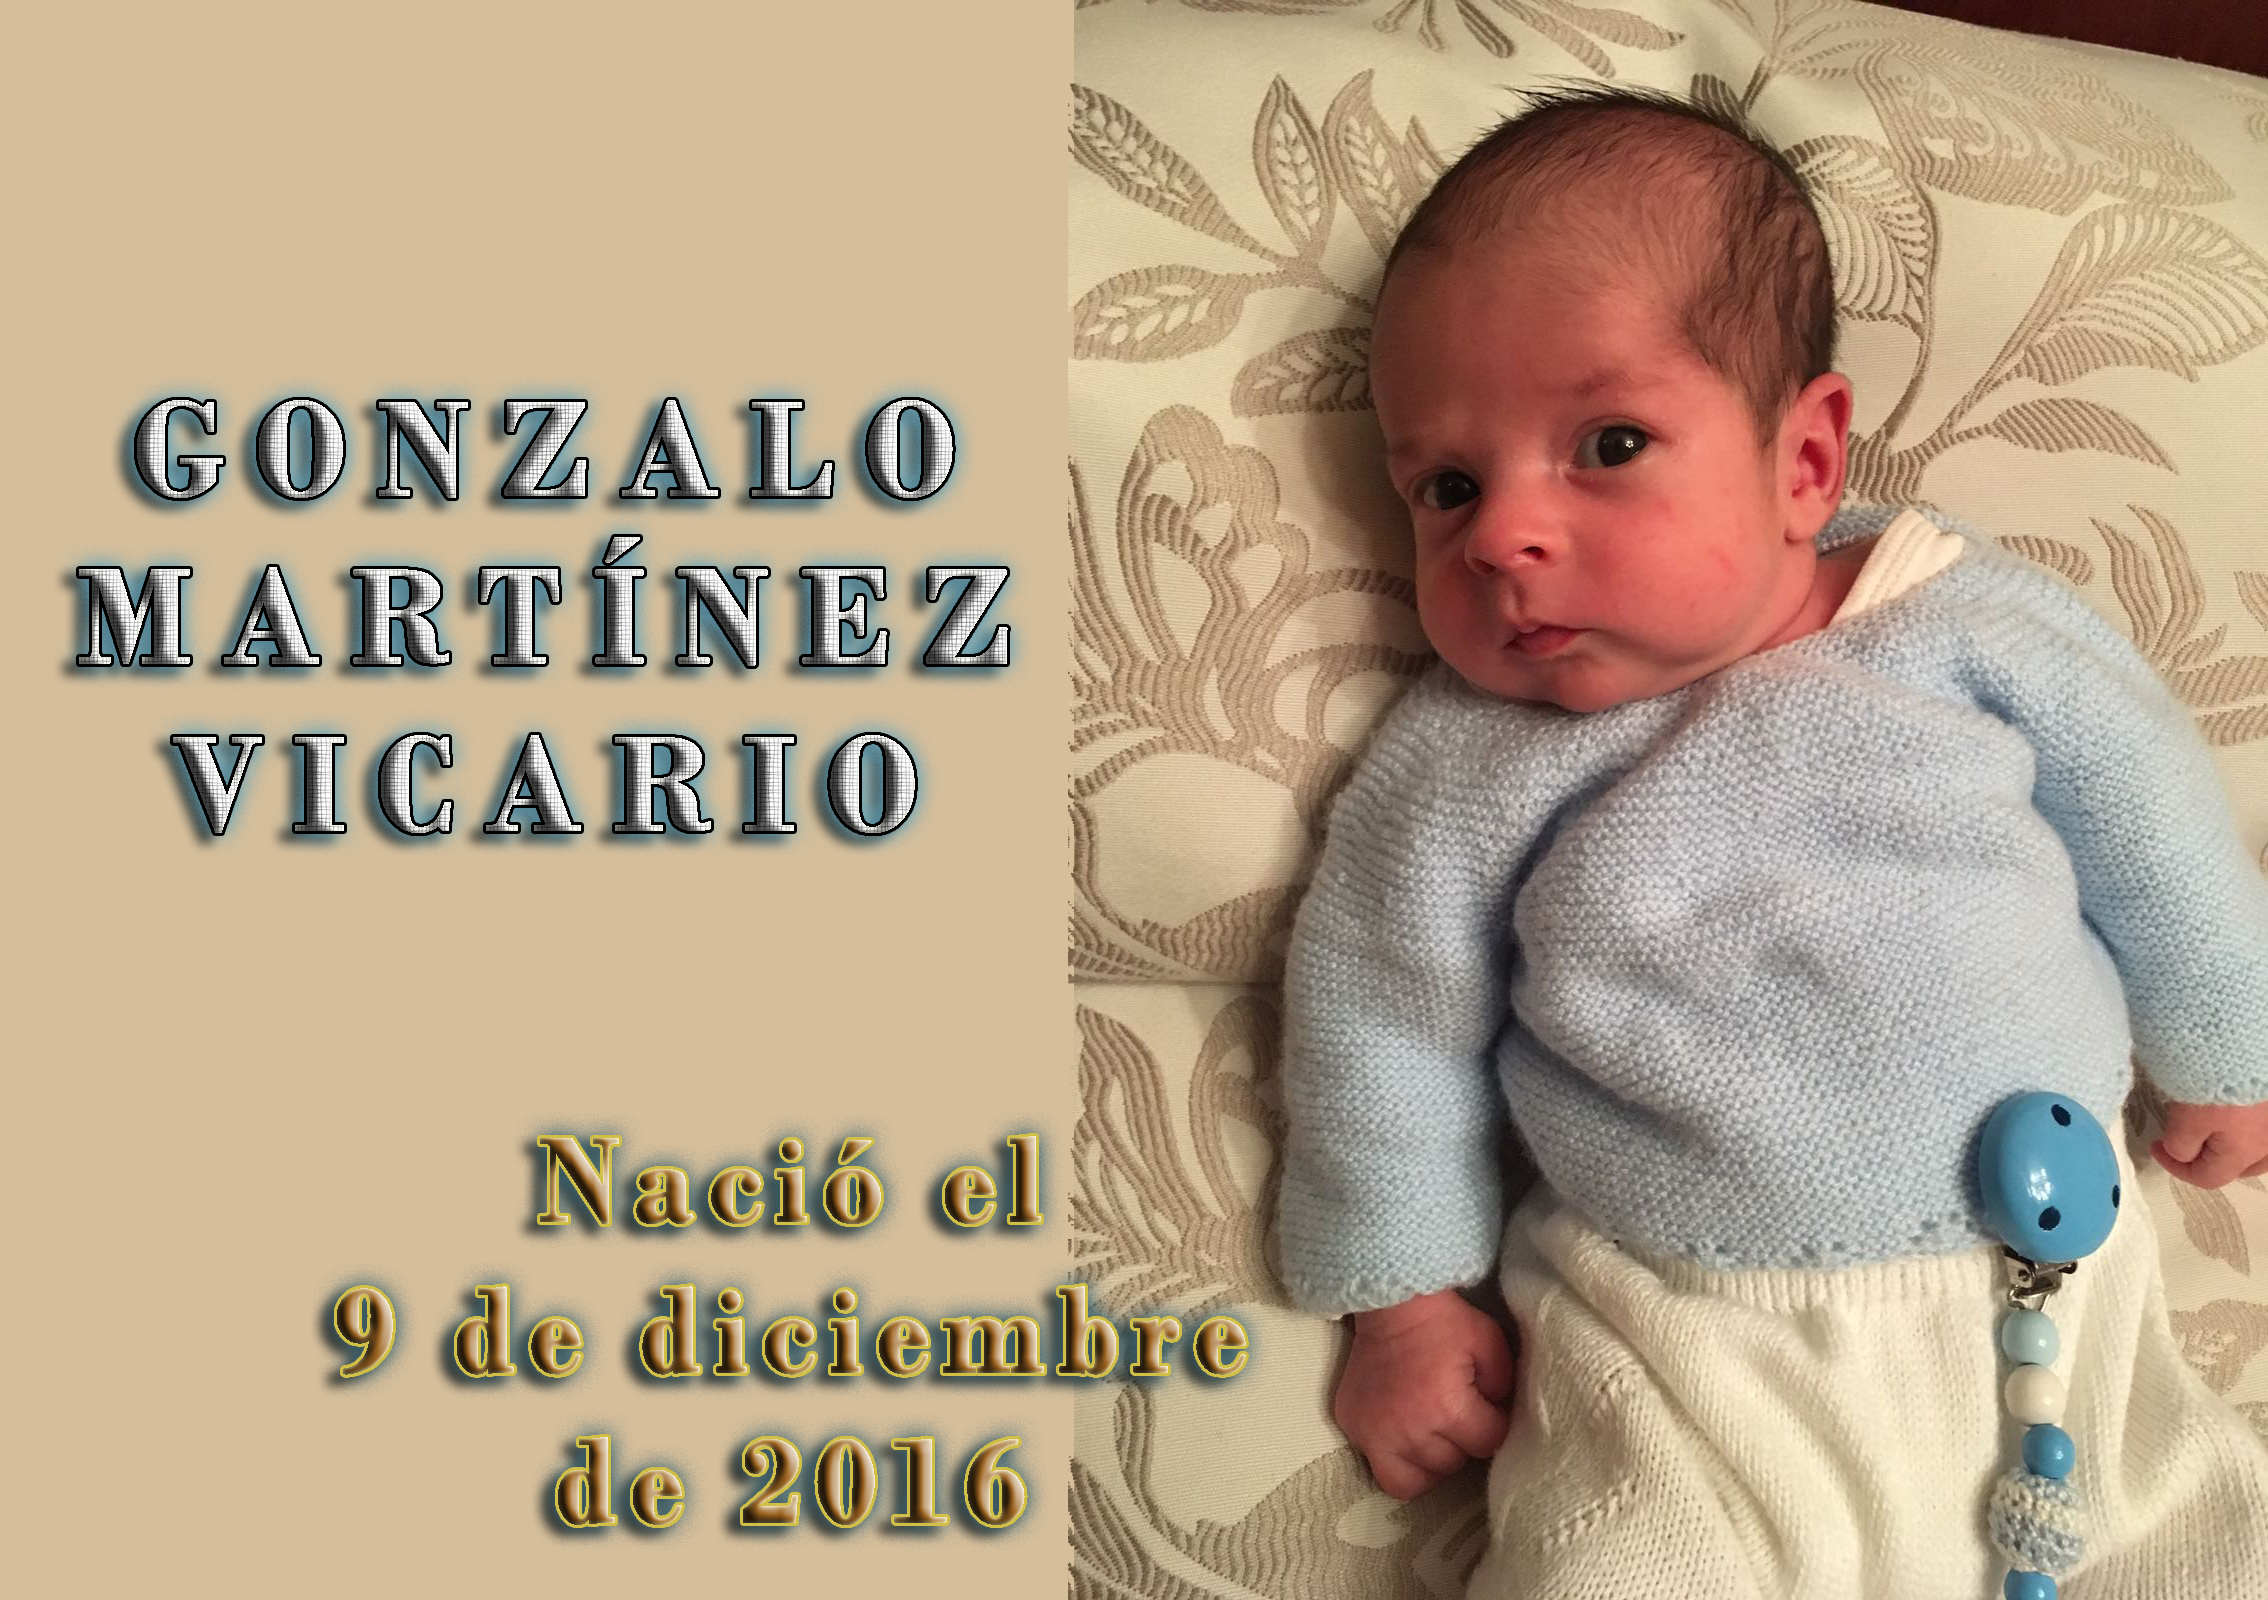 Gonzalo Martínez Vicario, nació el 9-12-2016